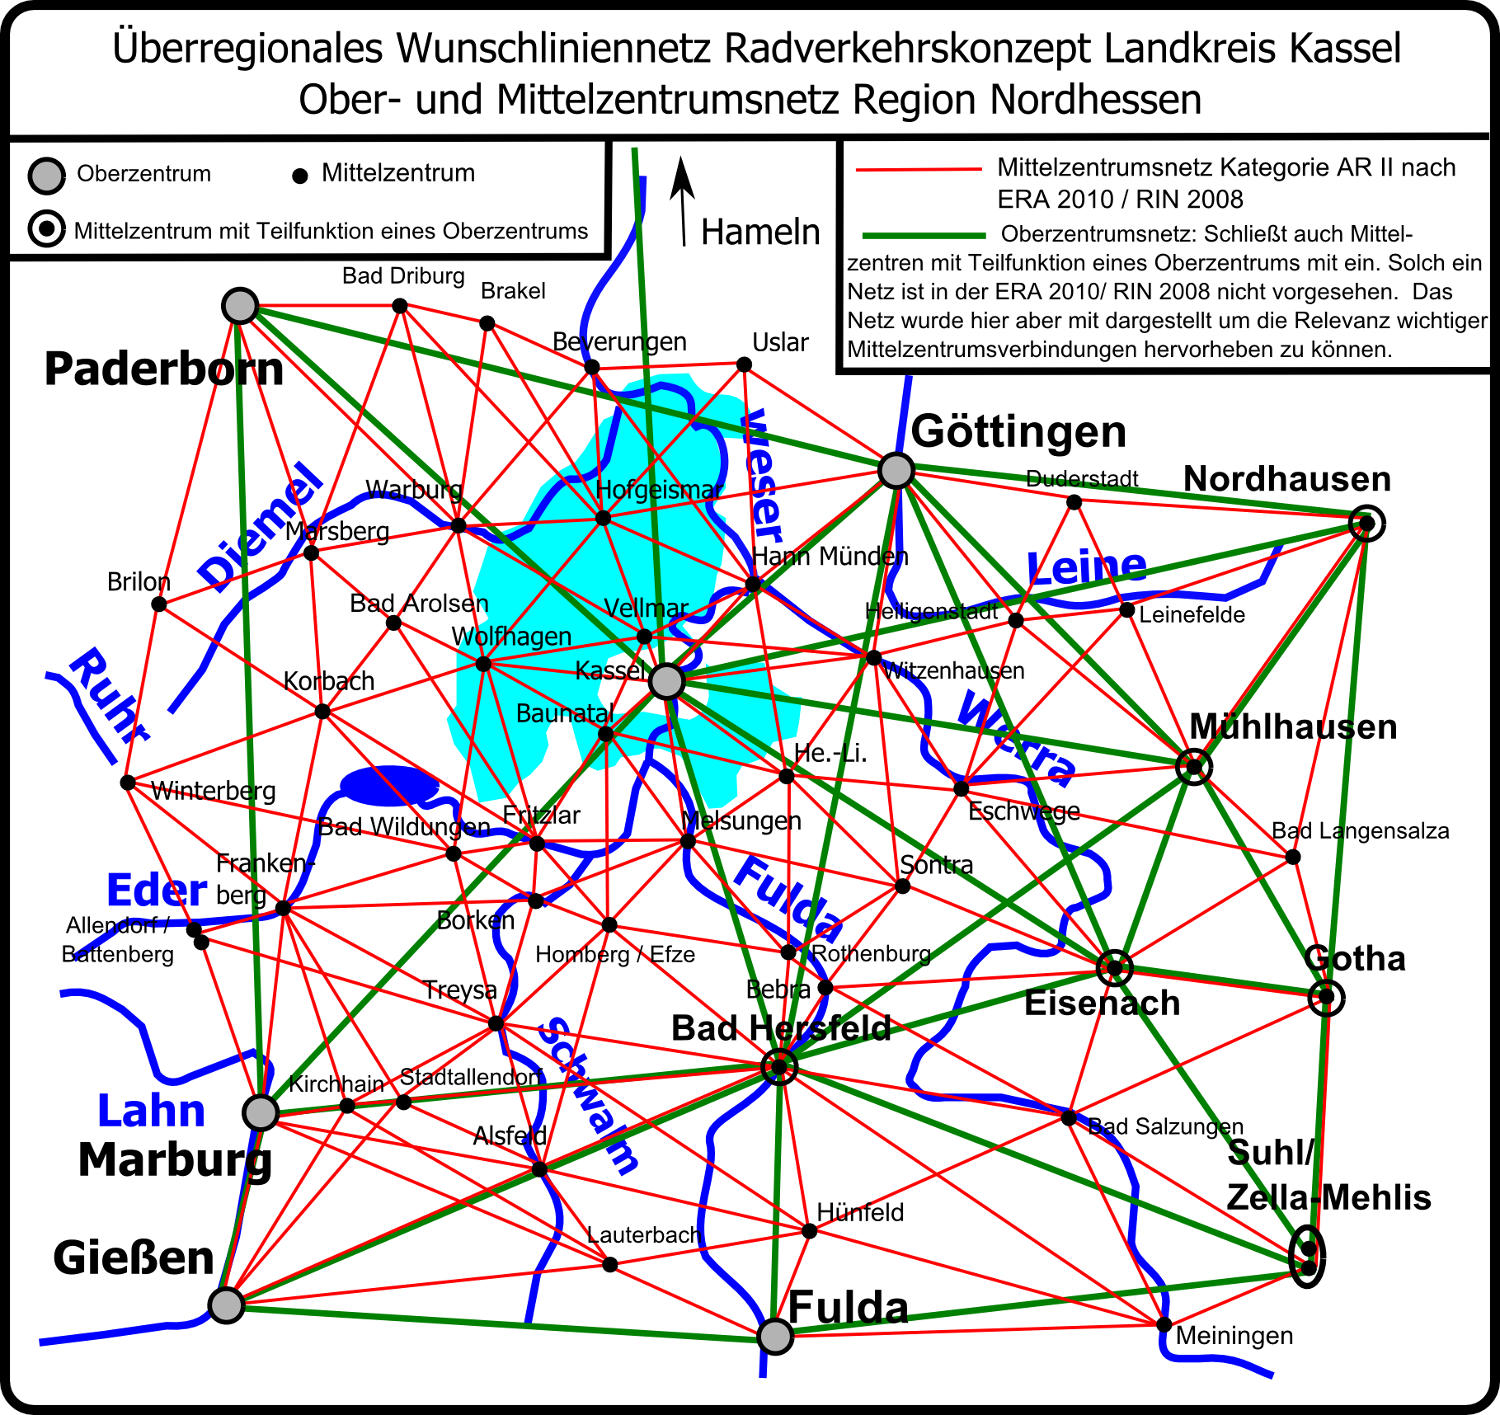 Image Wunschliniennetz_RVK_Kassel_Ober_und_Mittelzentrumsnetz_st_16_07_2014